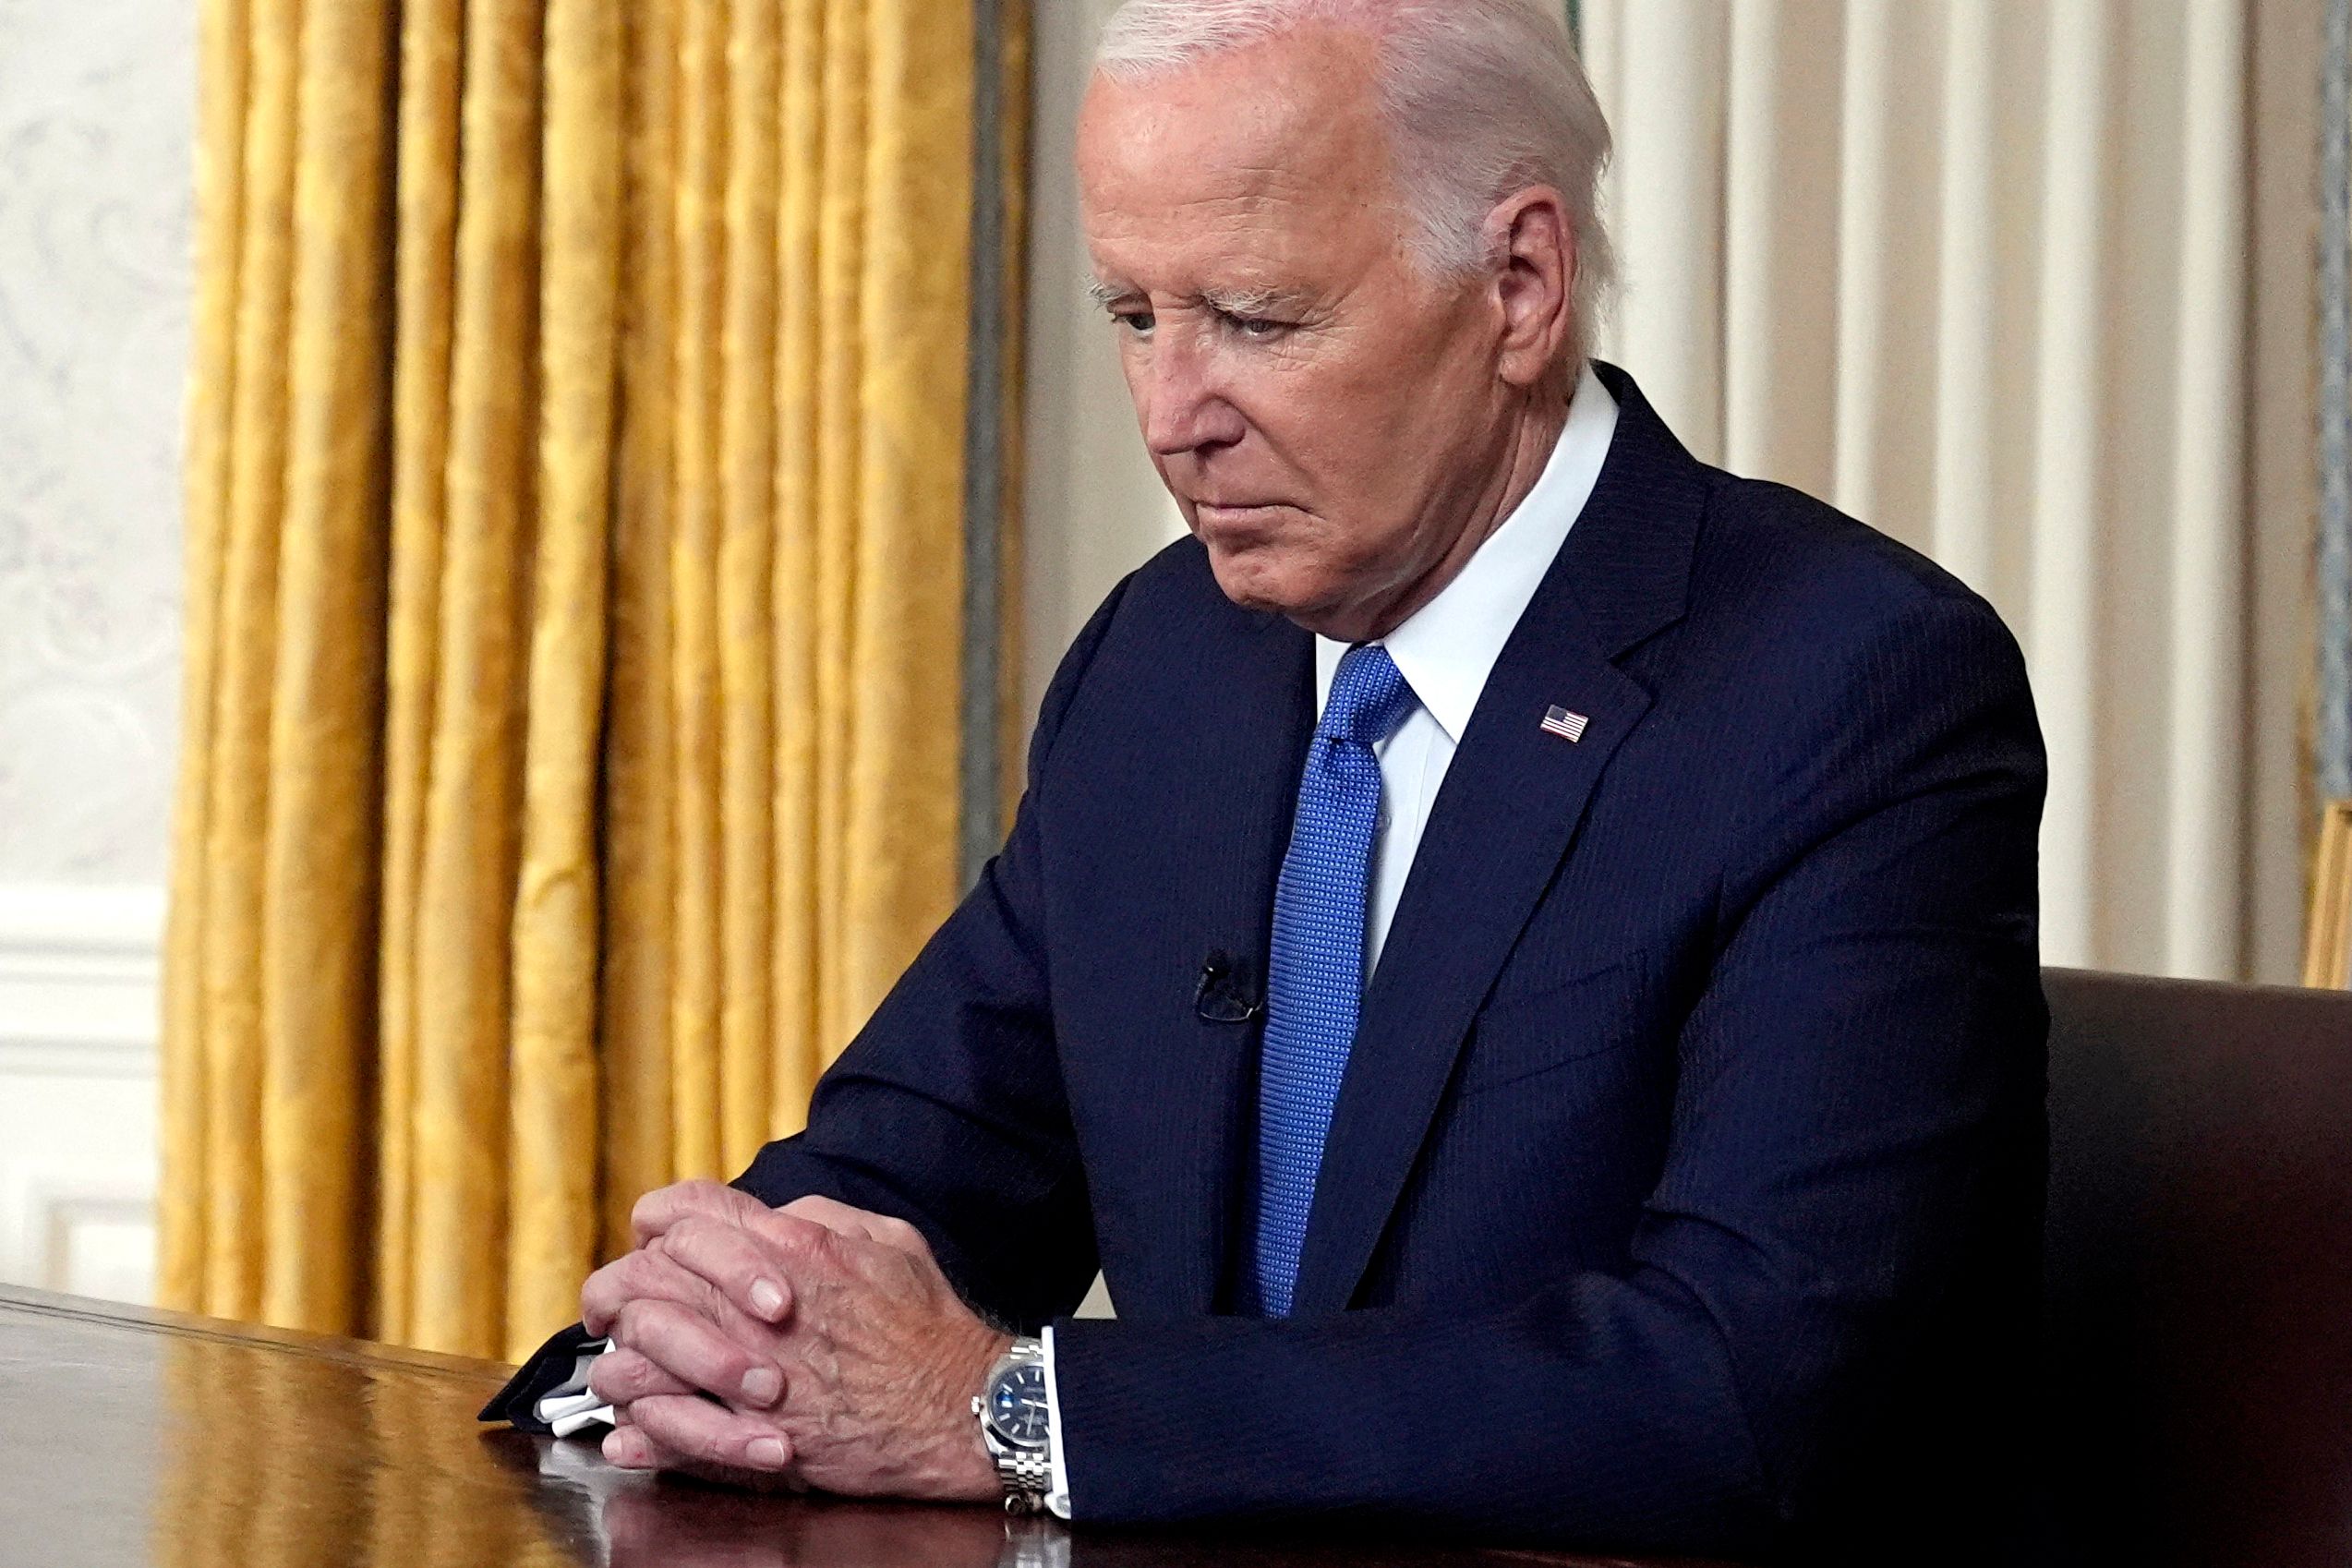 El presidente estadounidense Joe Biden hace una pausa antes de dirigirse a la nación sobre su decisión de no presentarse a la reelección, en el Despacho Oval de la Casa Blanca en Washington, DC, el 24 de julio de 2024. (Foto Prensa Libre: Evan Vucci / POOL / AFP)